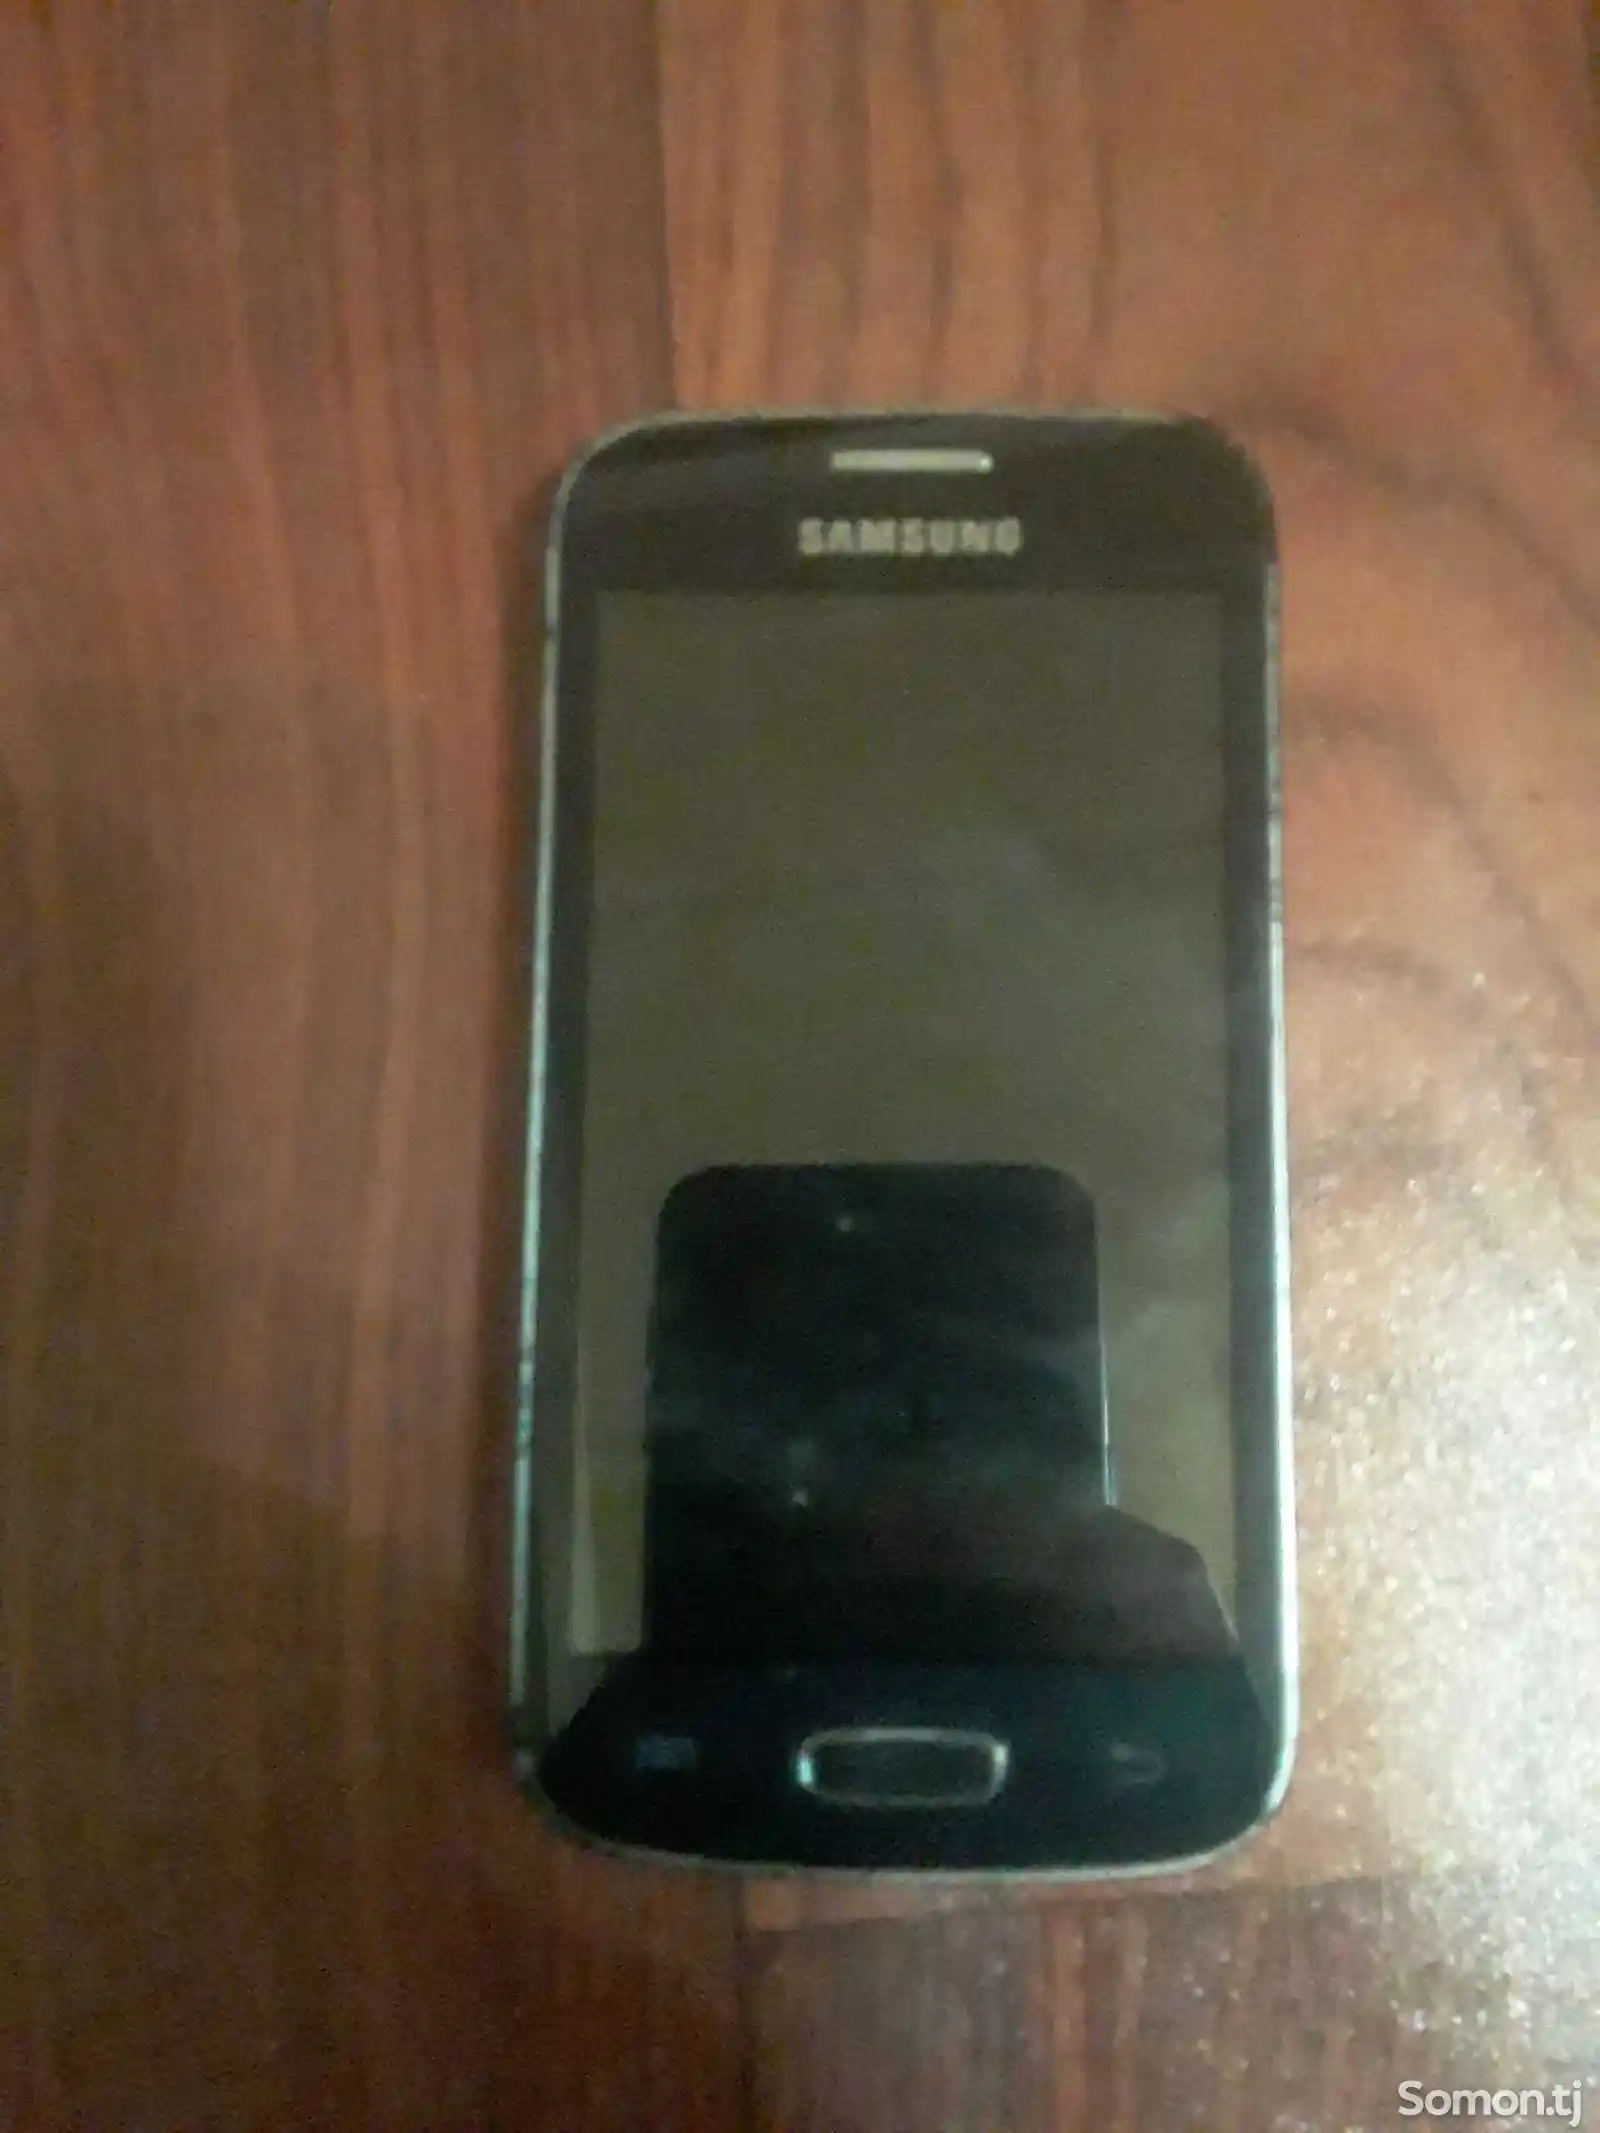 Samsung Galaxy A3-2